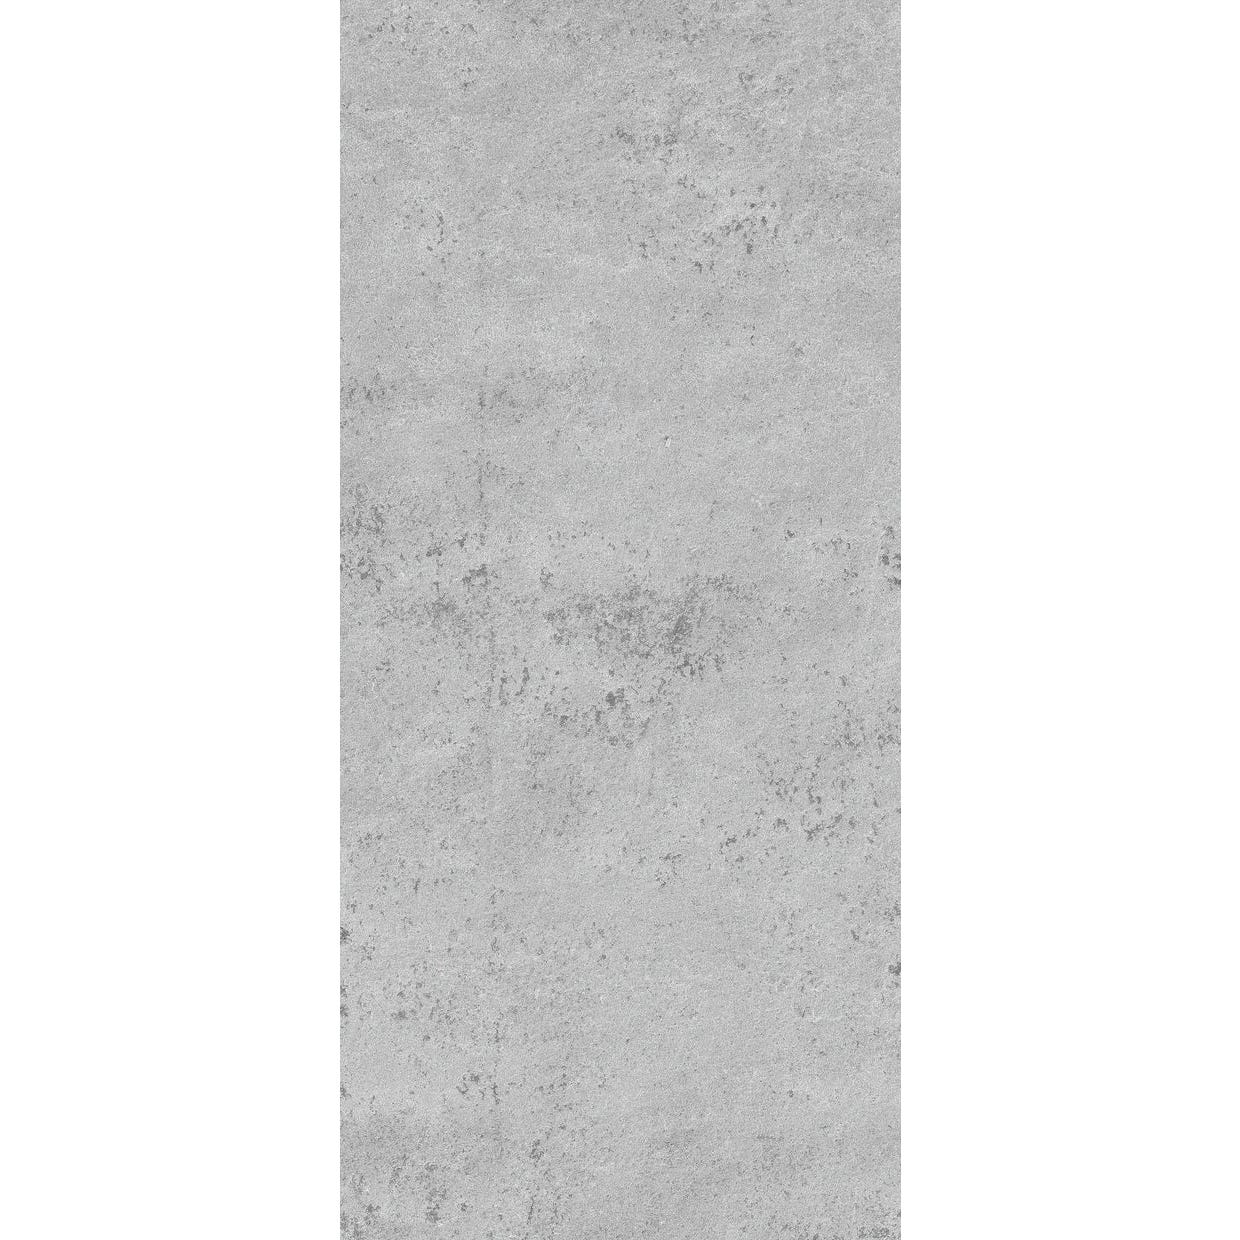 Schulte Panneau mural Pierre gris clair, revêtement pour douche et salle de bain, DécoDesign DÉCOR, Lot de 2 panneaux muraux 100 x 255 cm 1